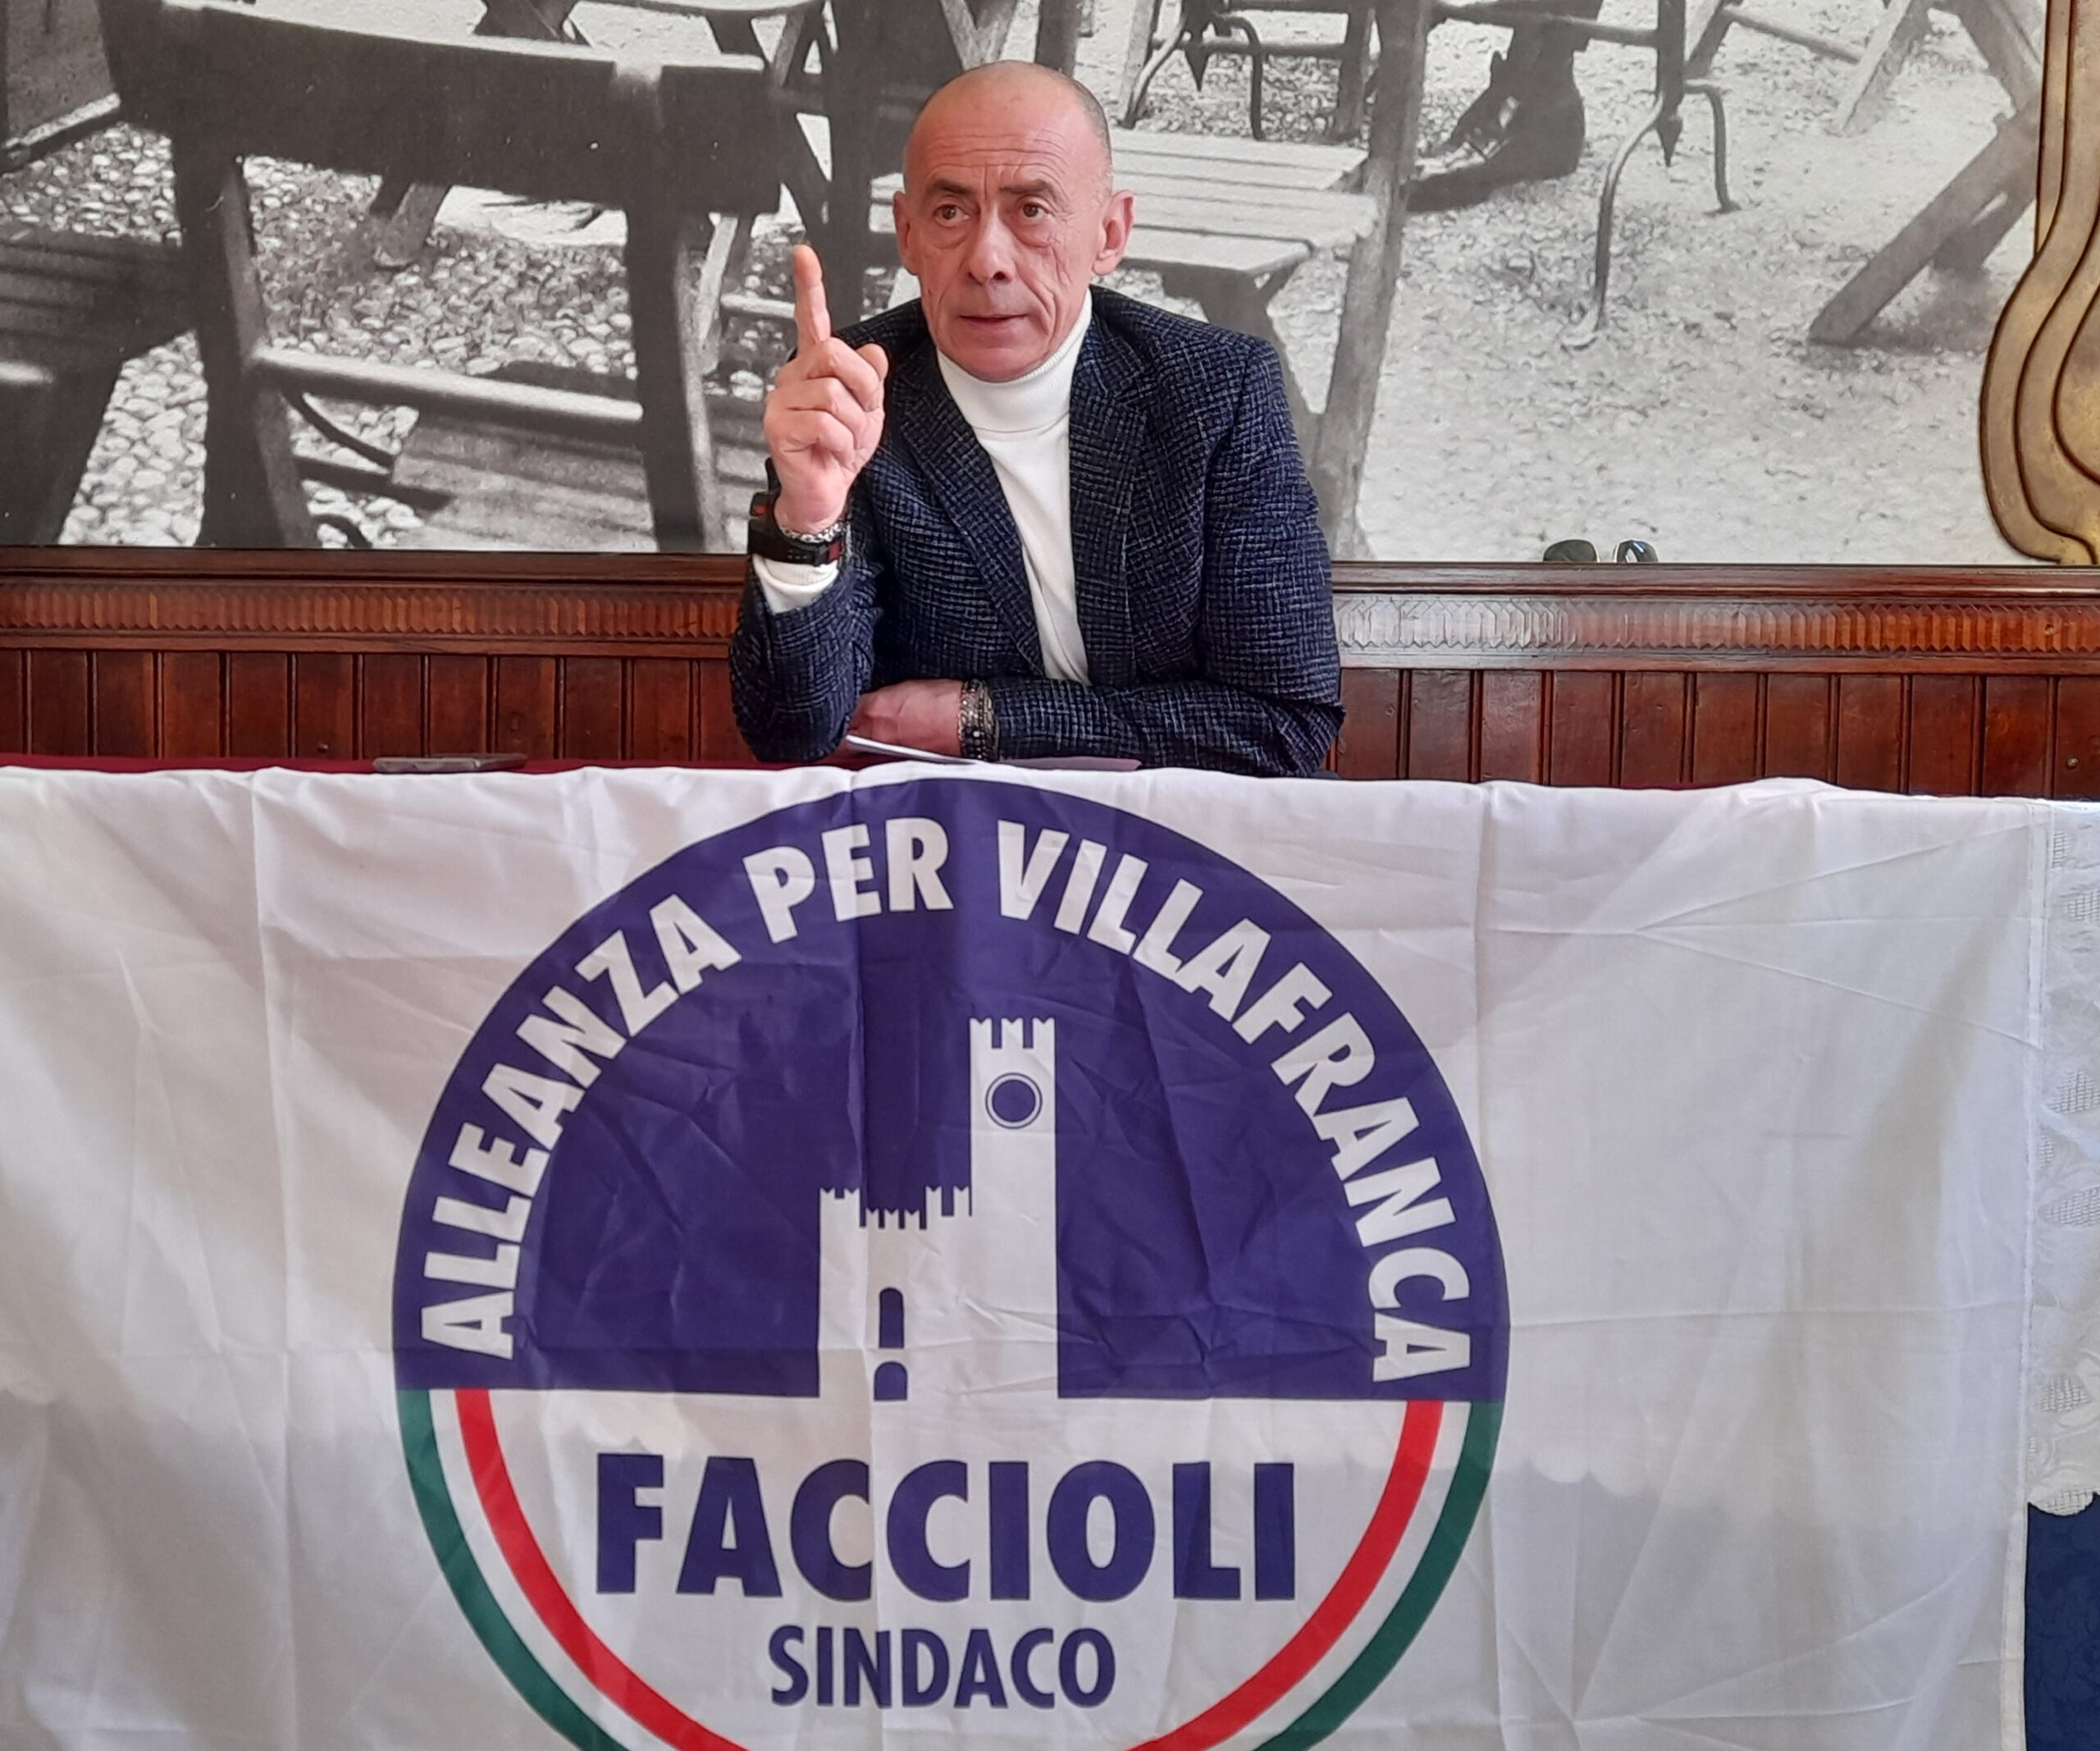 Mario Faccioli risponde all’espulsione: FDI a Villafranca non rispetta nemmeno il Regolamento di garanzia